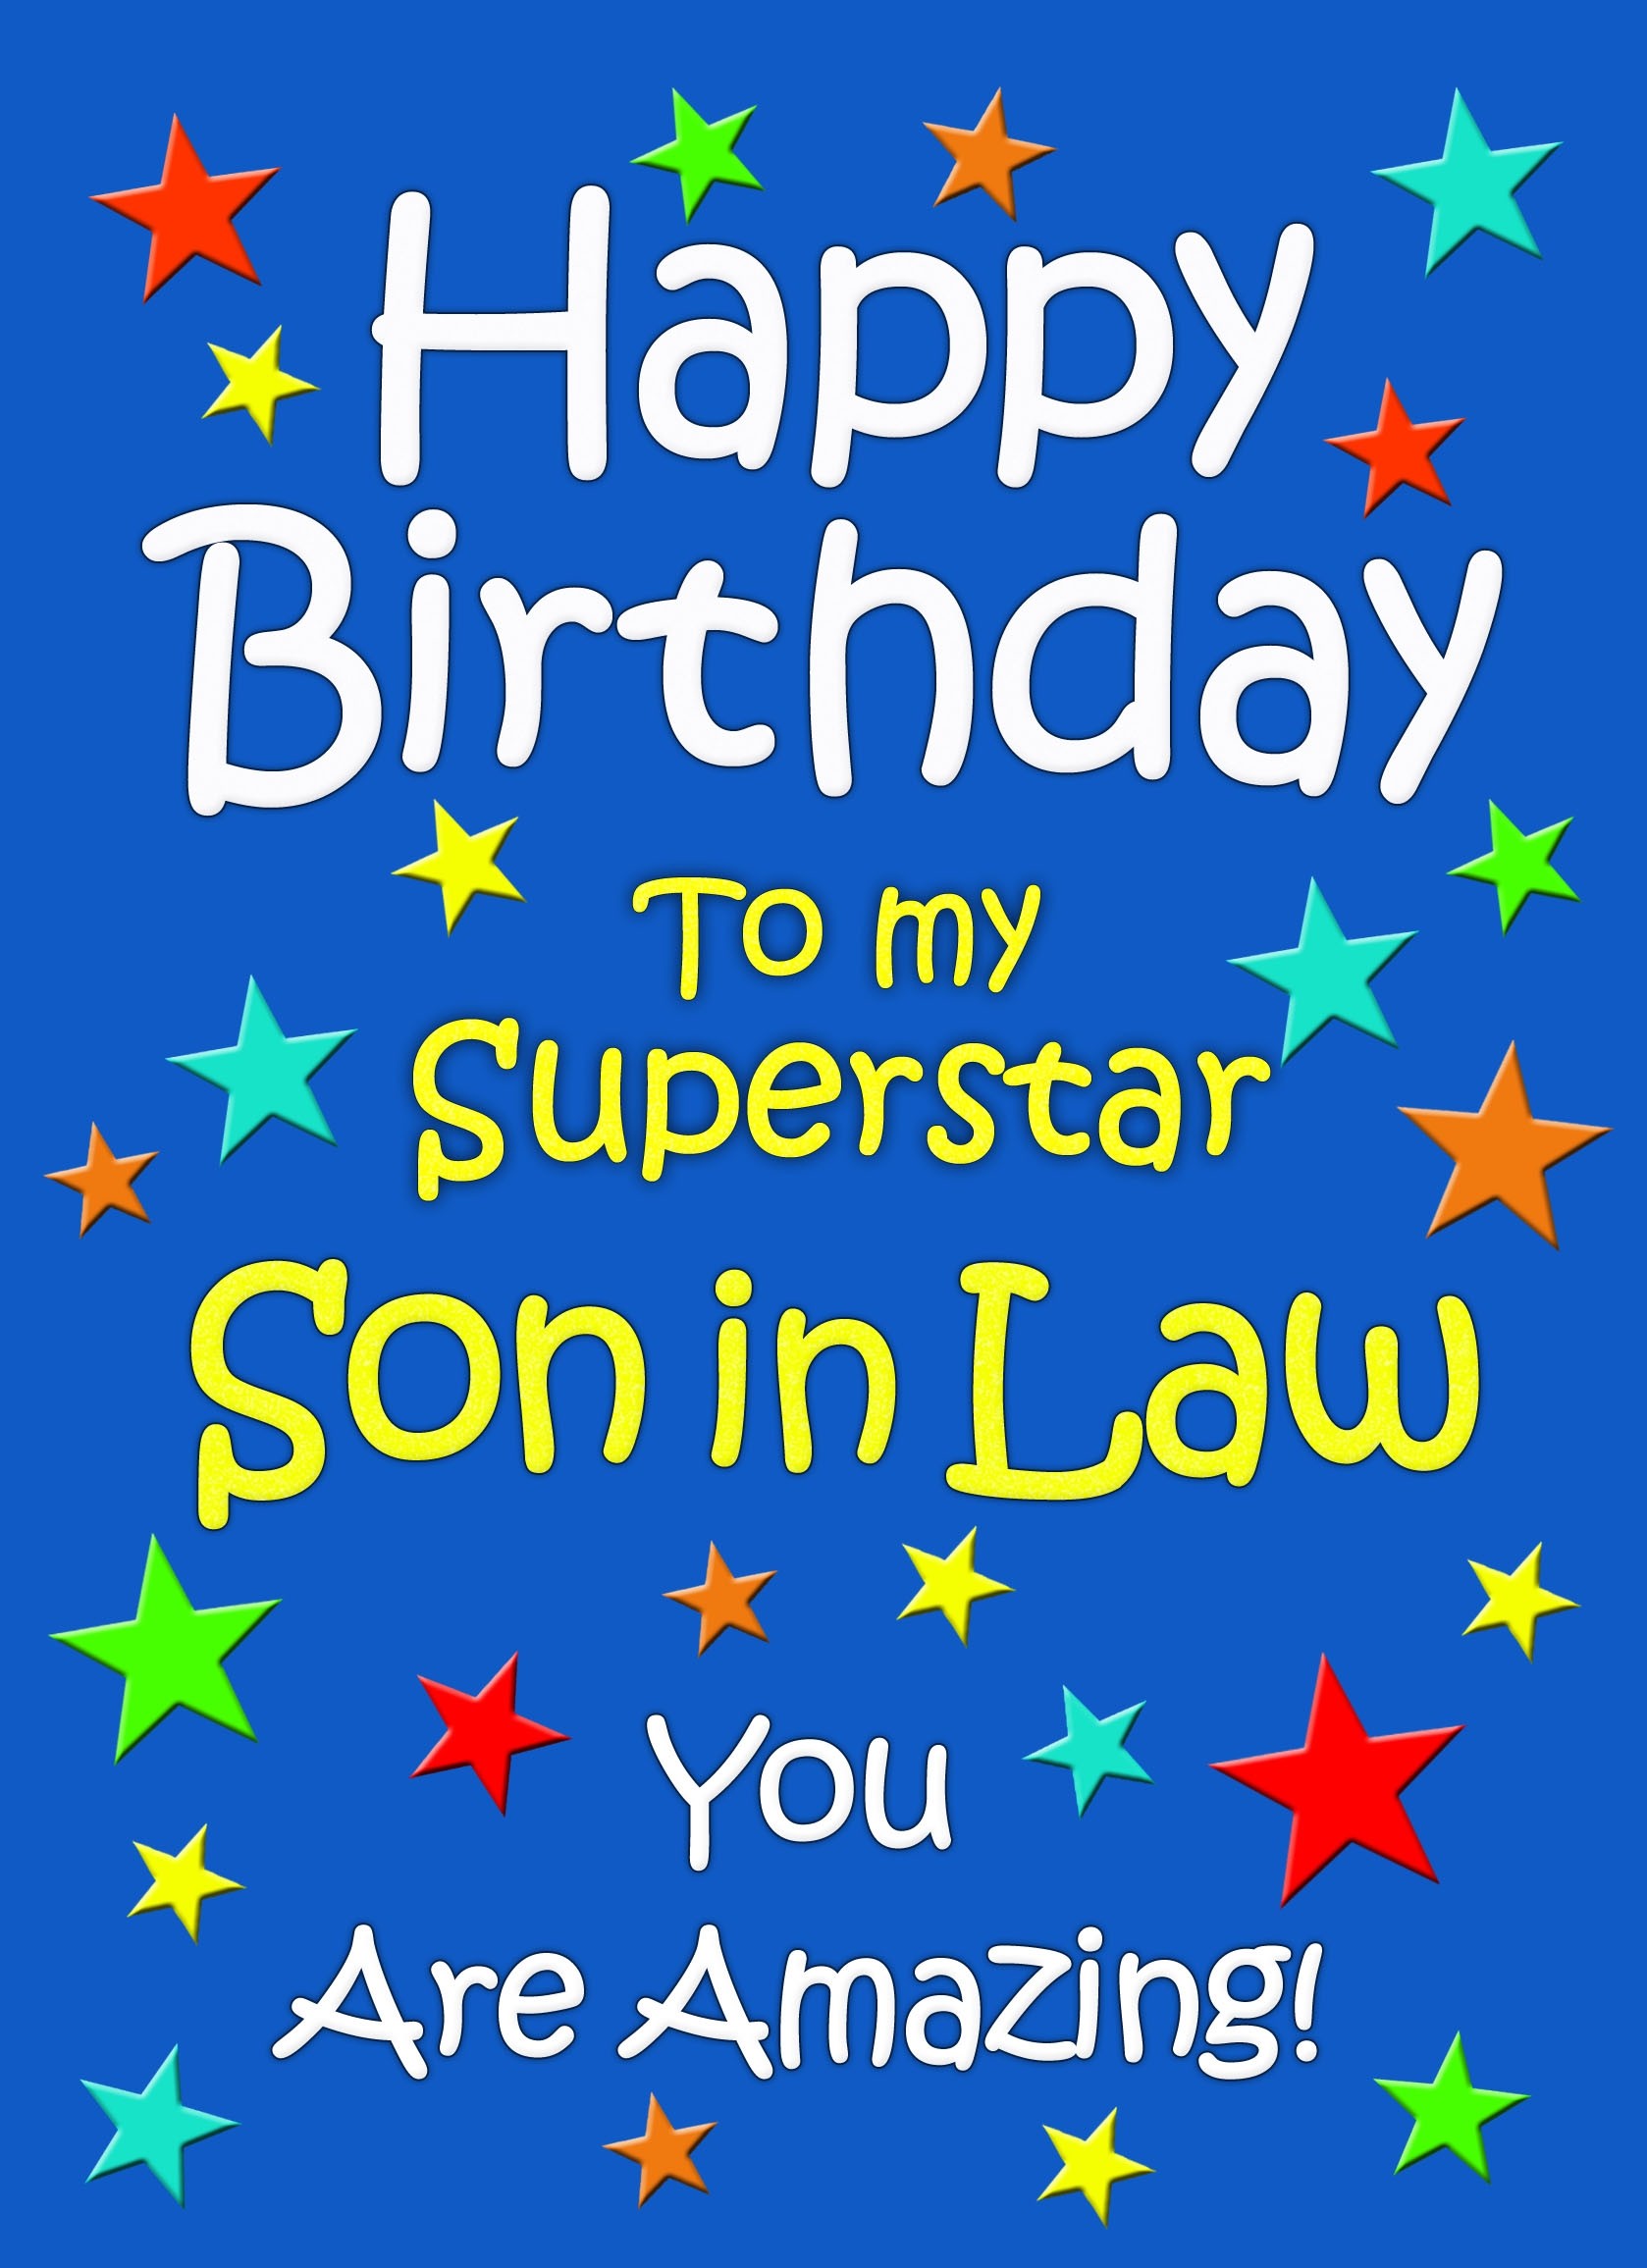 Son in Law Birthday Card (Blue)